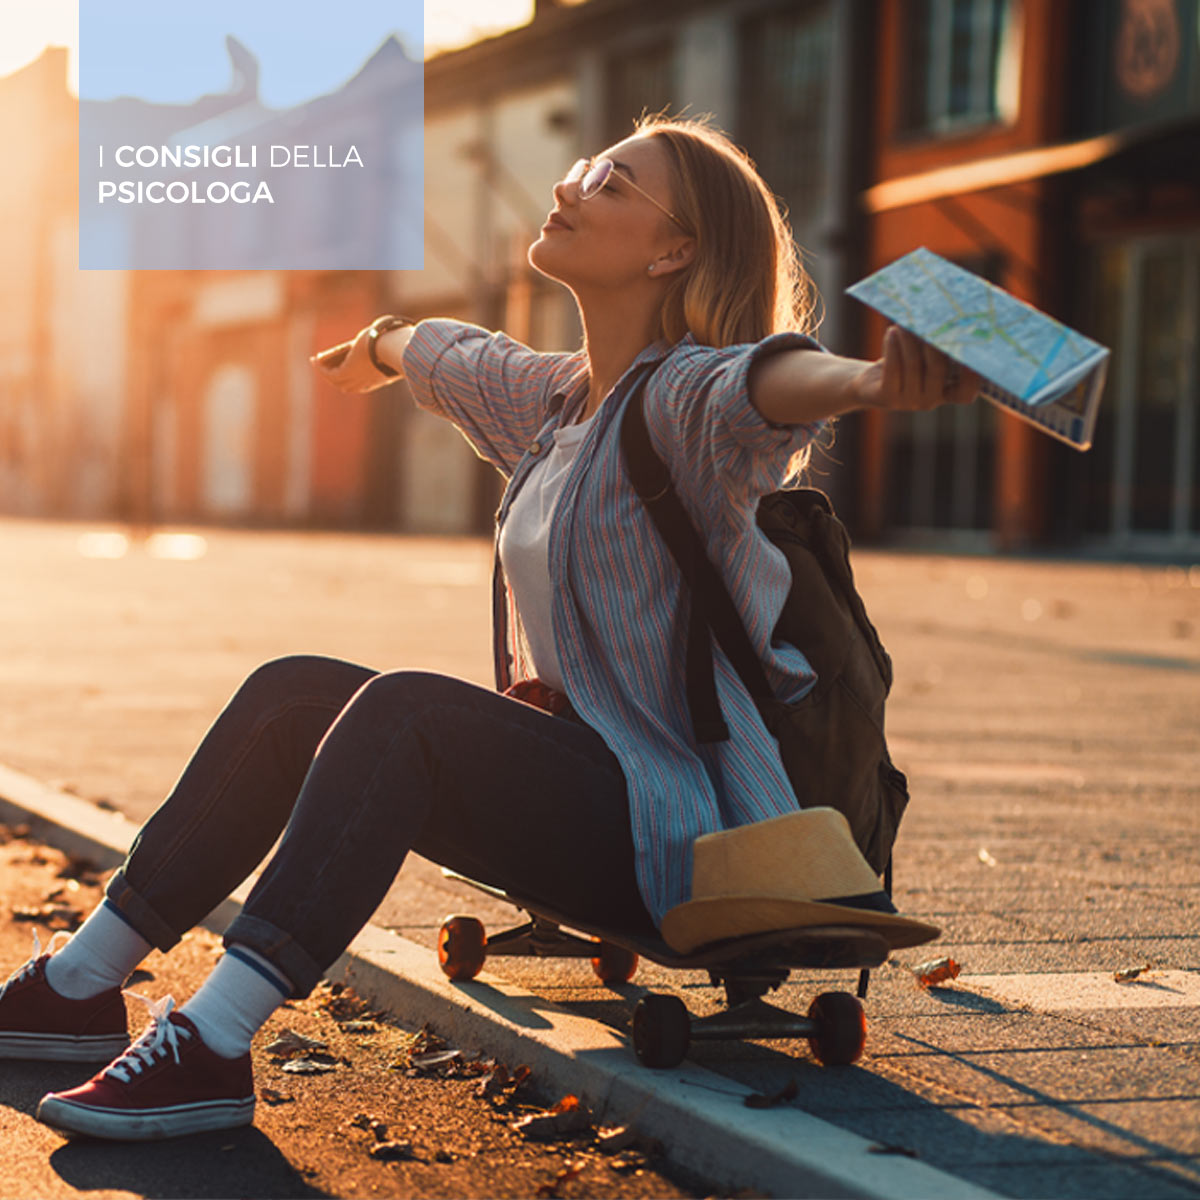 Una ragazza allarga le braccia al sole seduta su uno skateboard